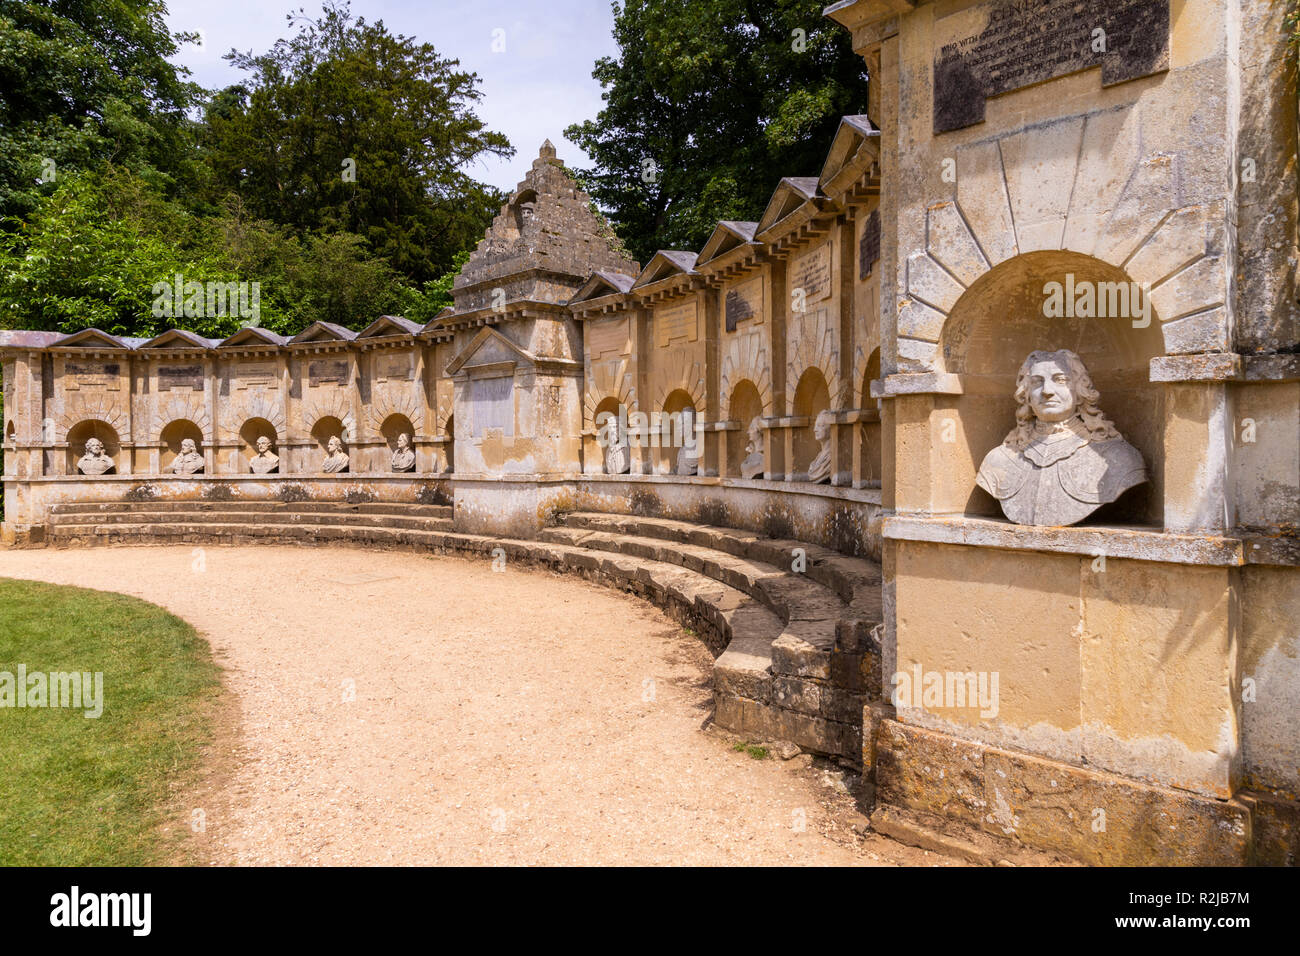 Le Temple de la Dignitaires de Stowe House Gardens, Buckinghamshire UK Banque D'Images